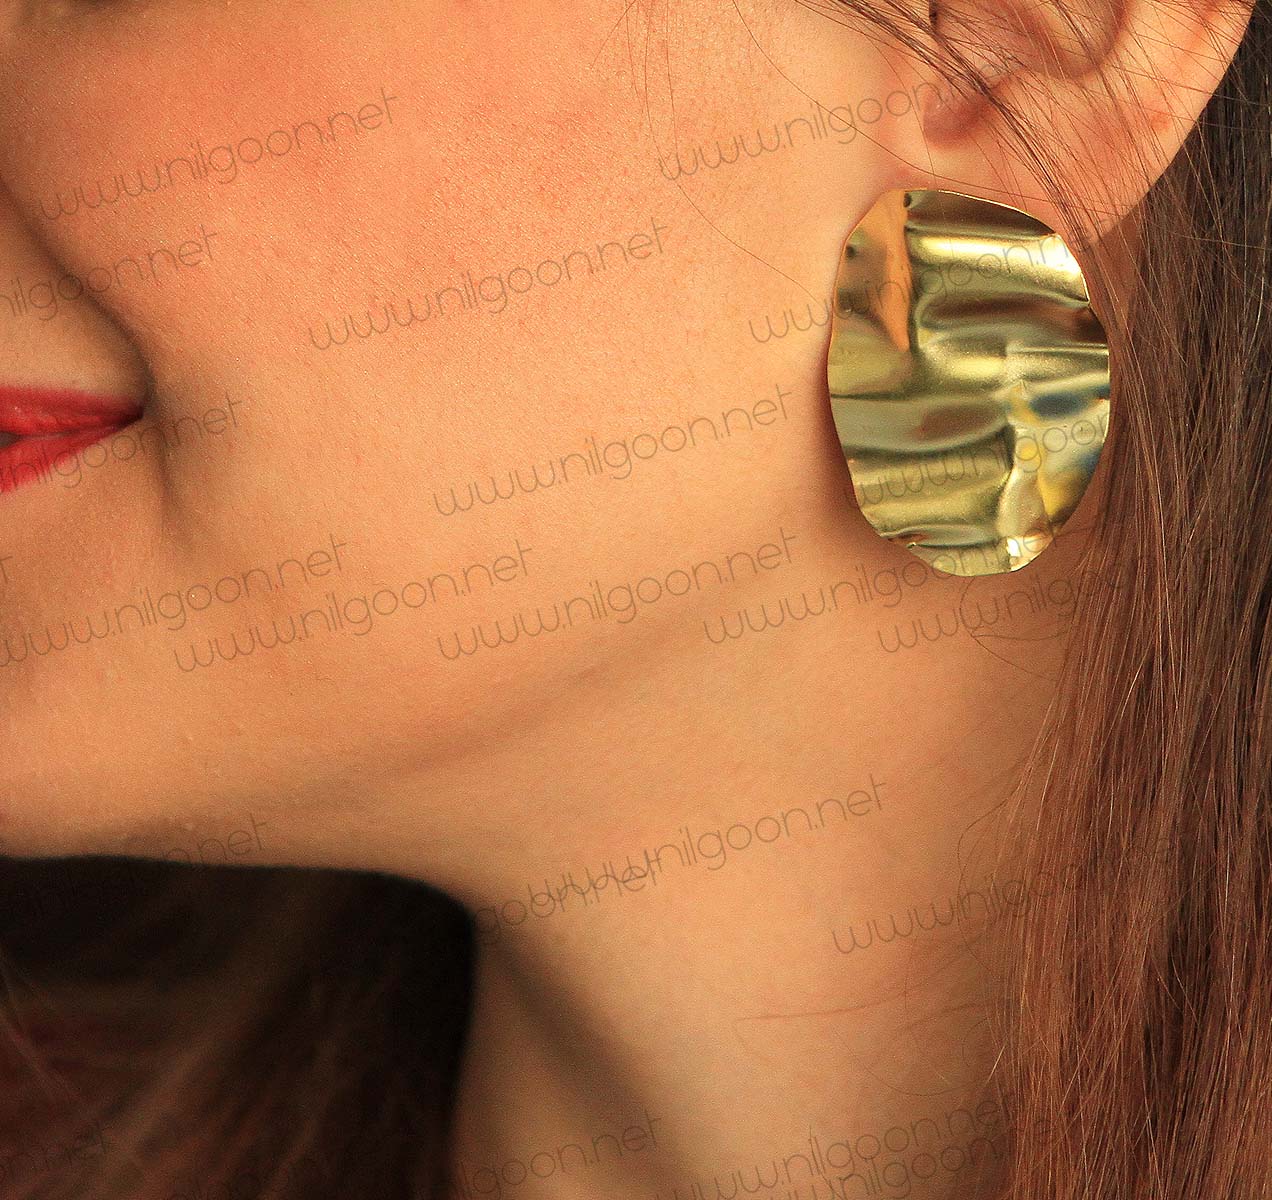 Deformed brass earrings